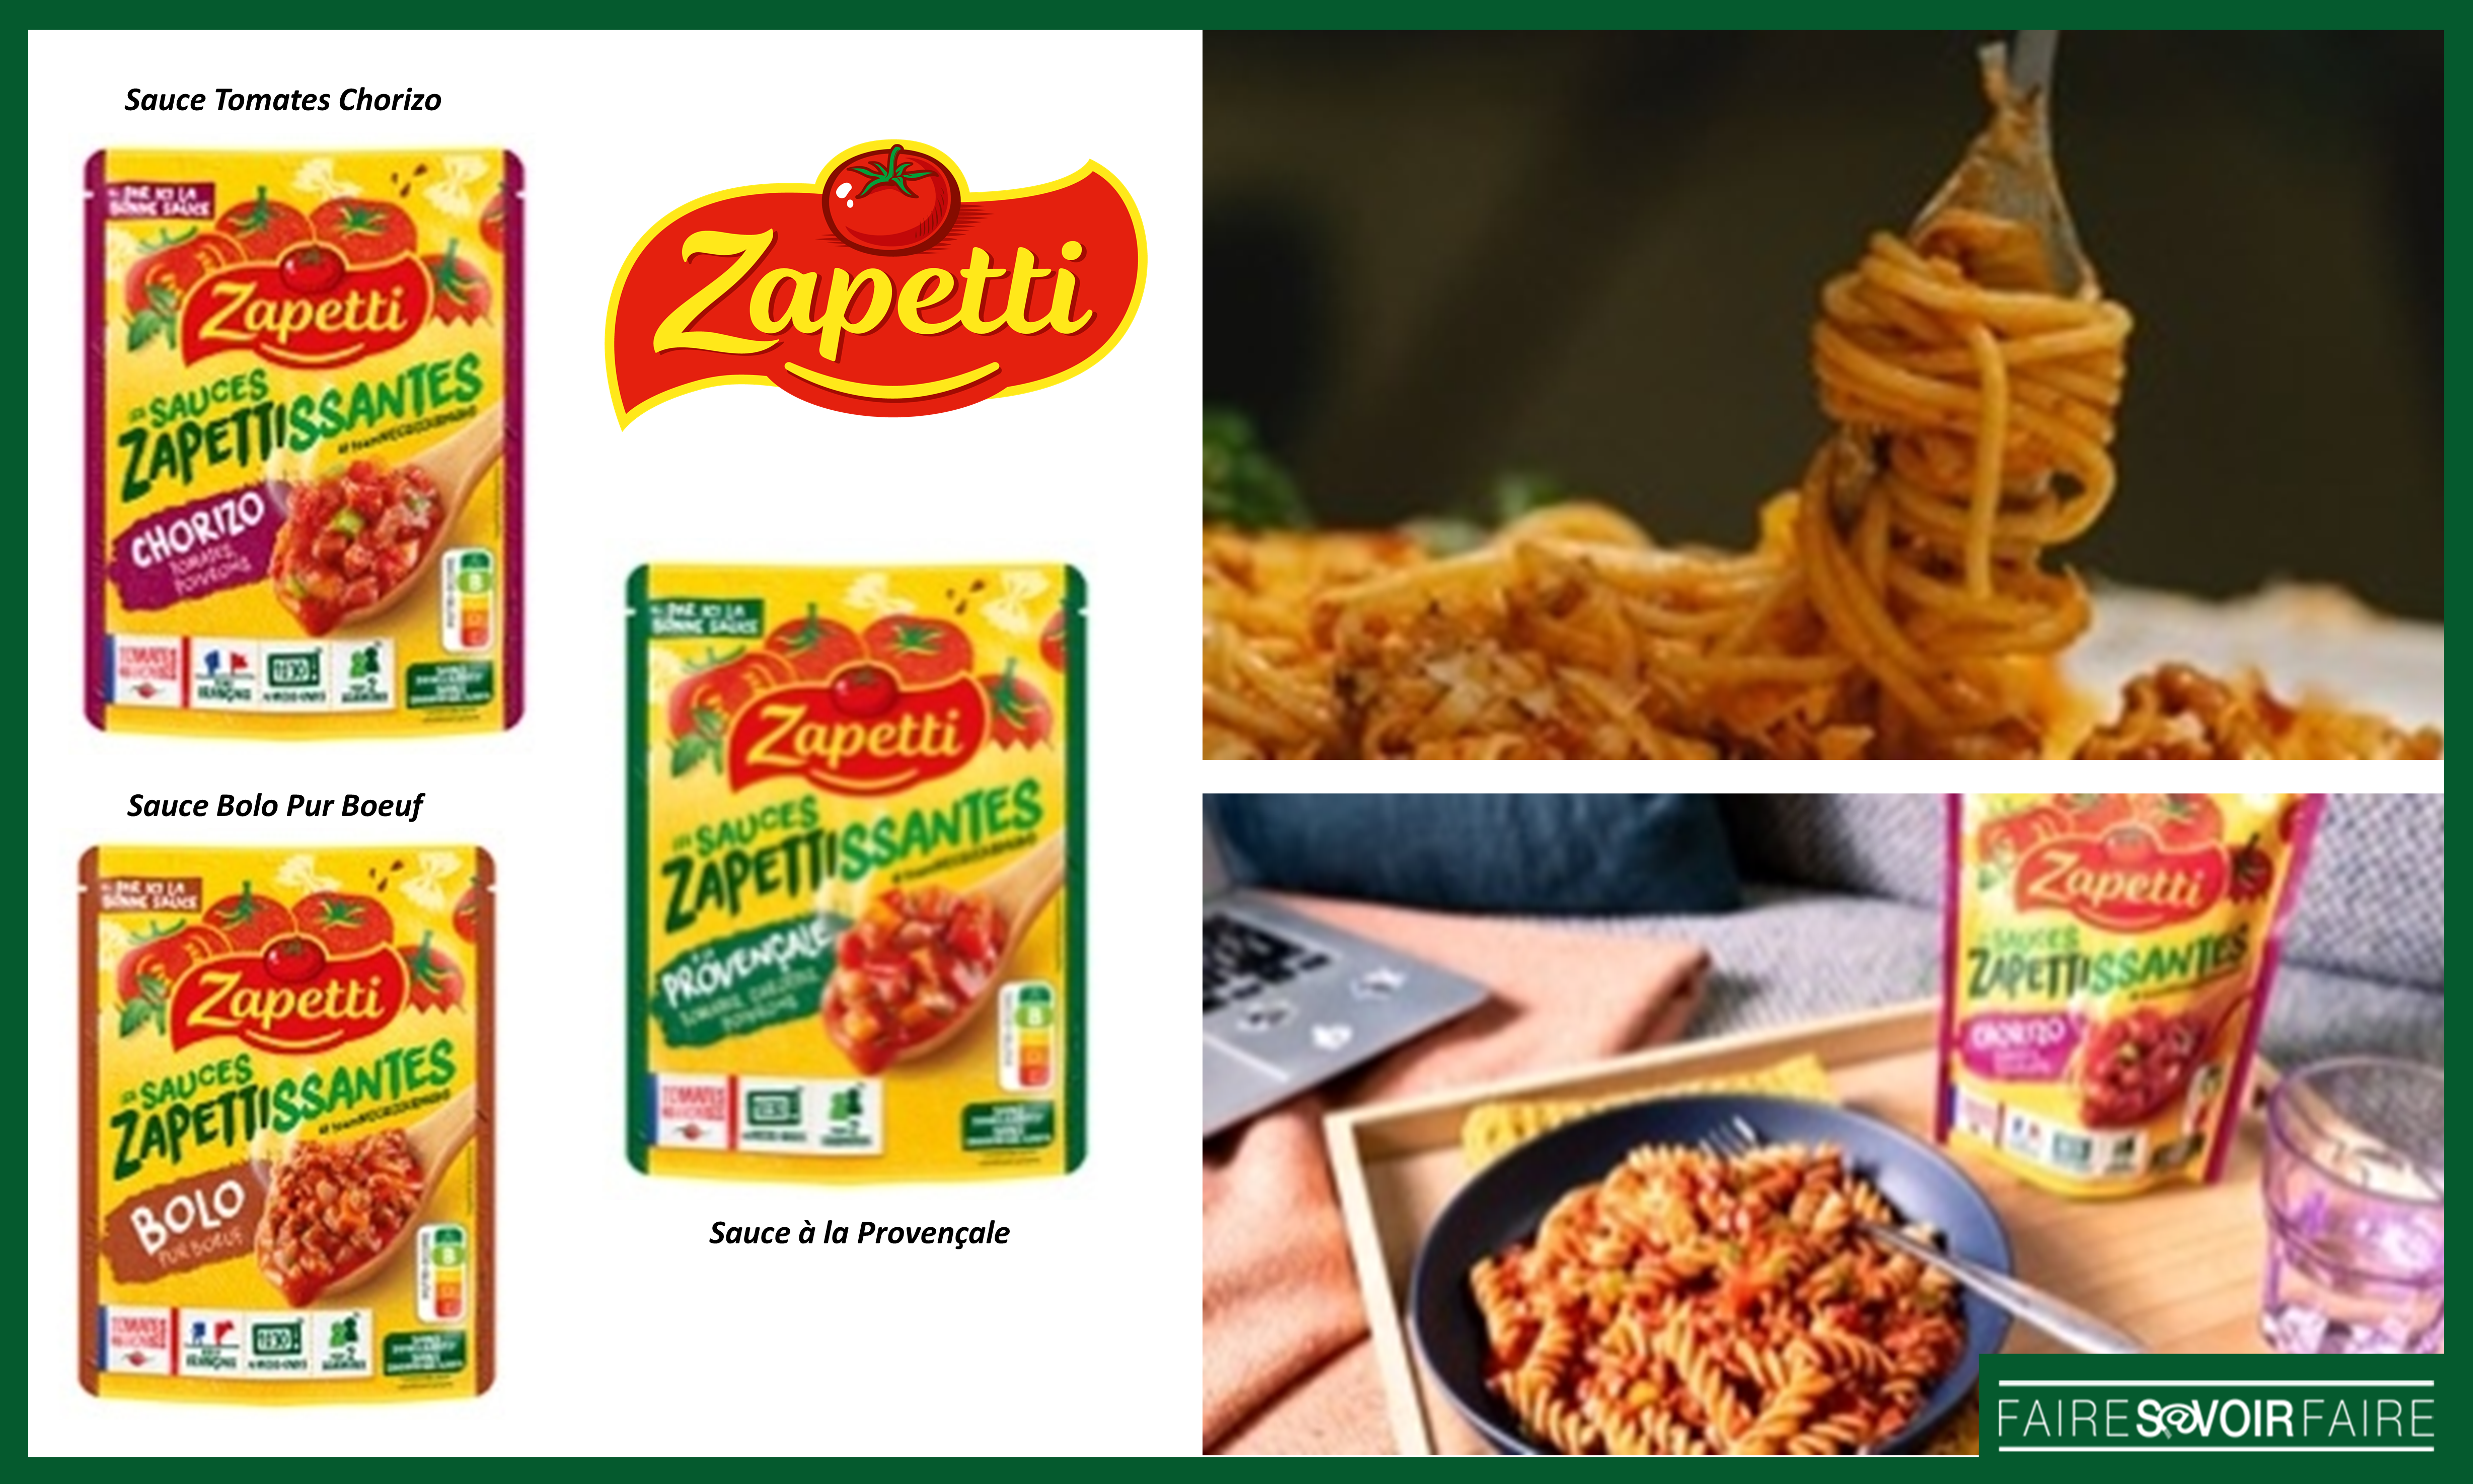 Zapetti lance 3 recettes de sauces tomate dans sa nouvelle gamme Les Zapettissantes